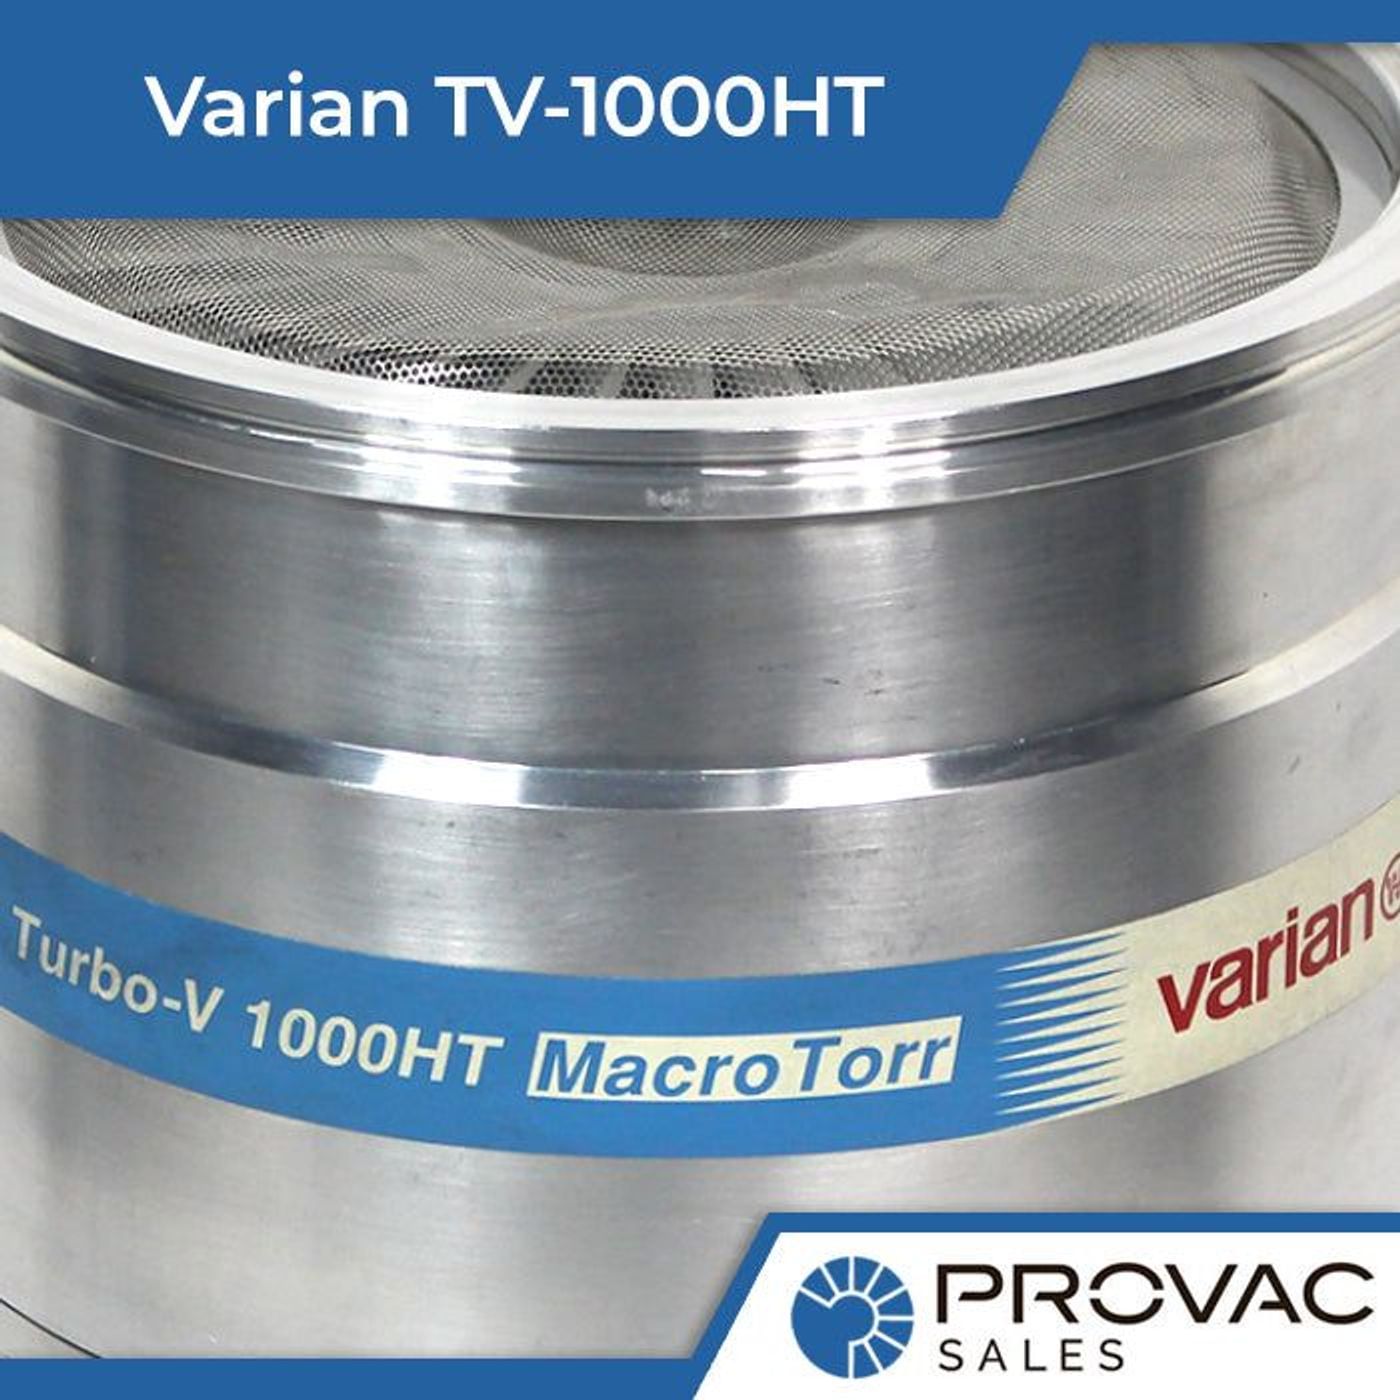 Product Spotlight: Varian TV-1000HT Turbo Pump